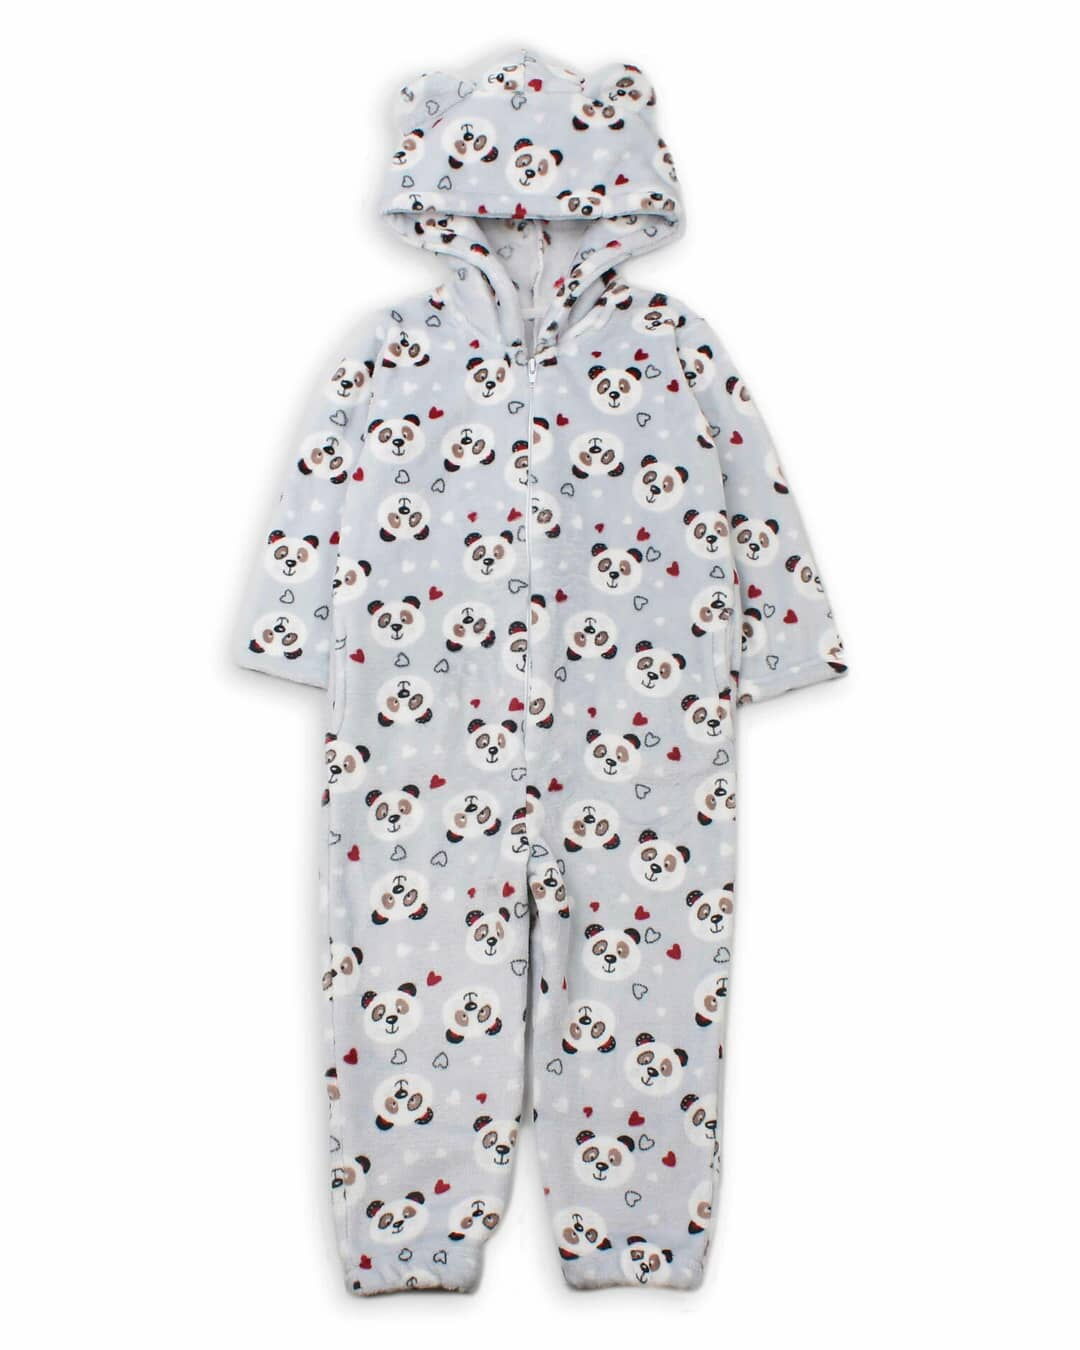 Пижама-кигуруми для девочки Фламинго Панды серая 901-910 - цена